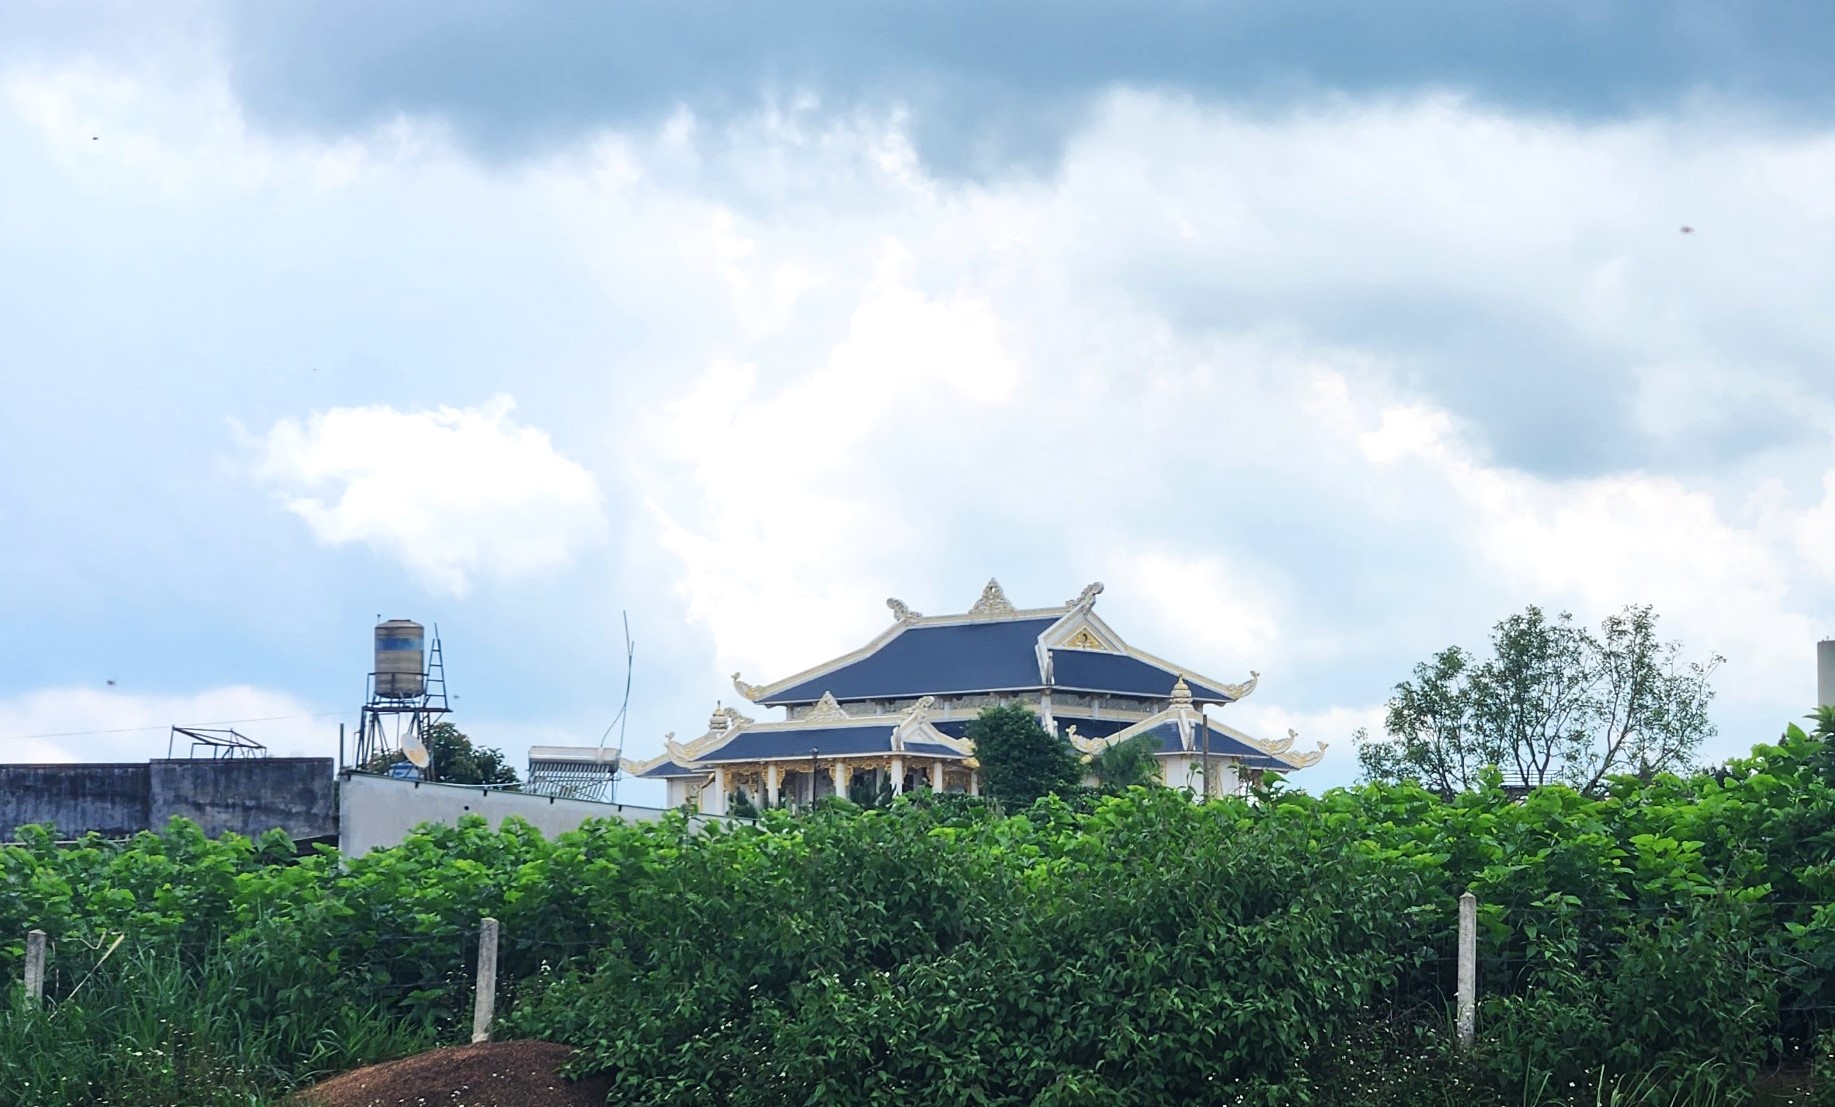 Qua kiểm tra của UBND TP Bảo Lộc thì Căn nhà xây dựng có hình dáng giống chùa xây dựng trên đất nông nghiệp, với diện tích khoảng 800 mét vuông